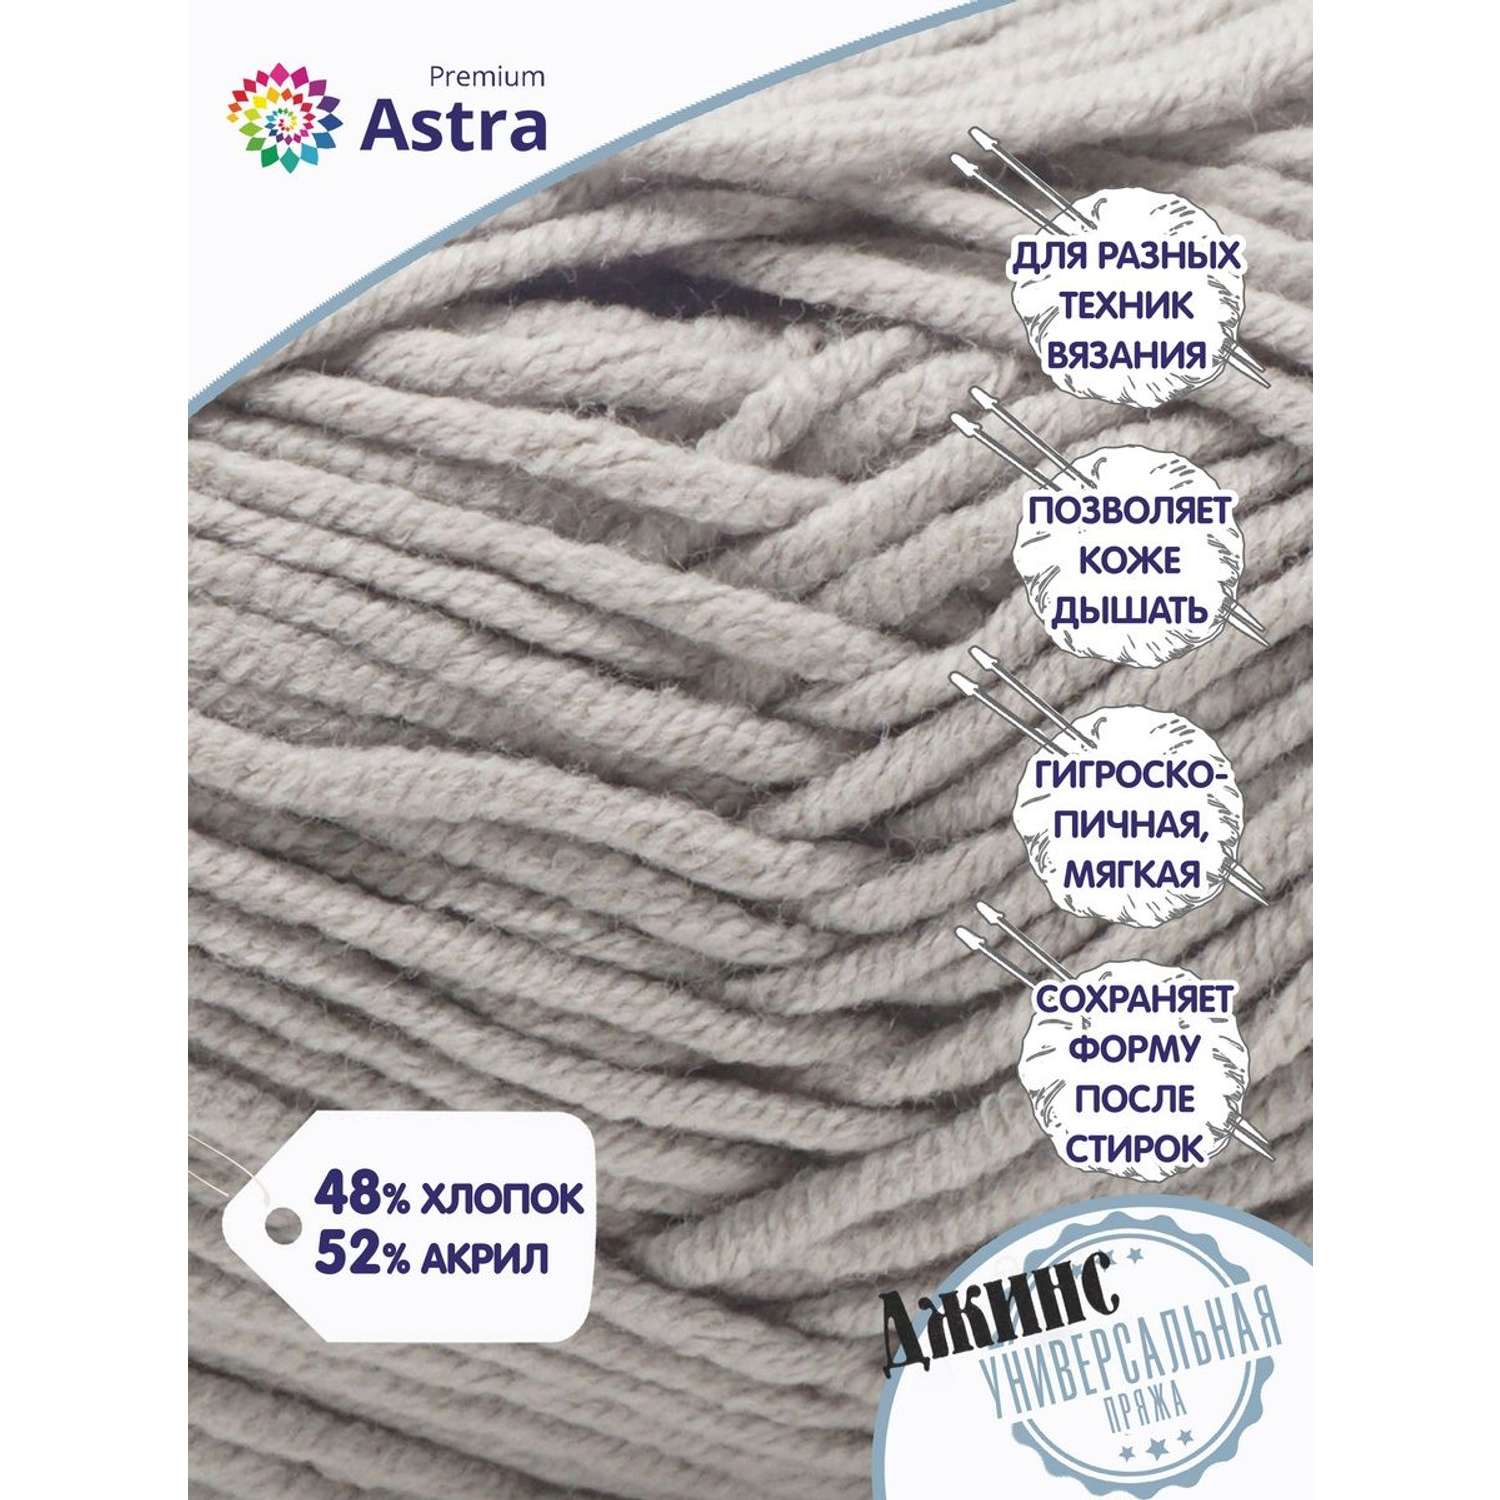 Пряжа для вязания Astra Premium джинс для повседневной одежды акрил хлопок 50 гр 135 м 910 серый 4 мотка - фото 2